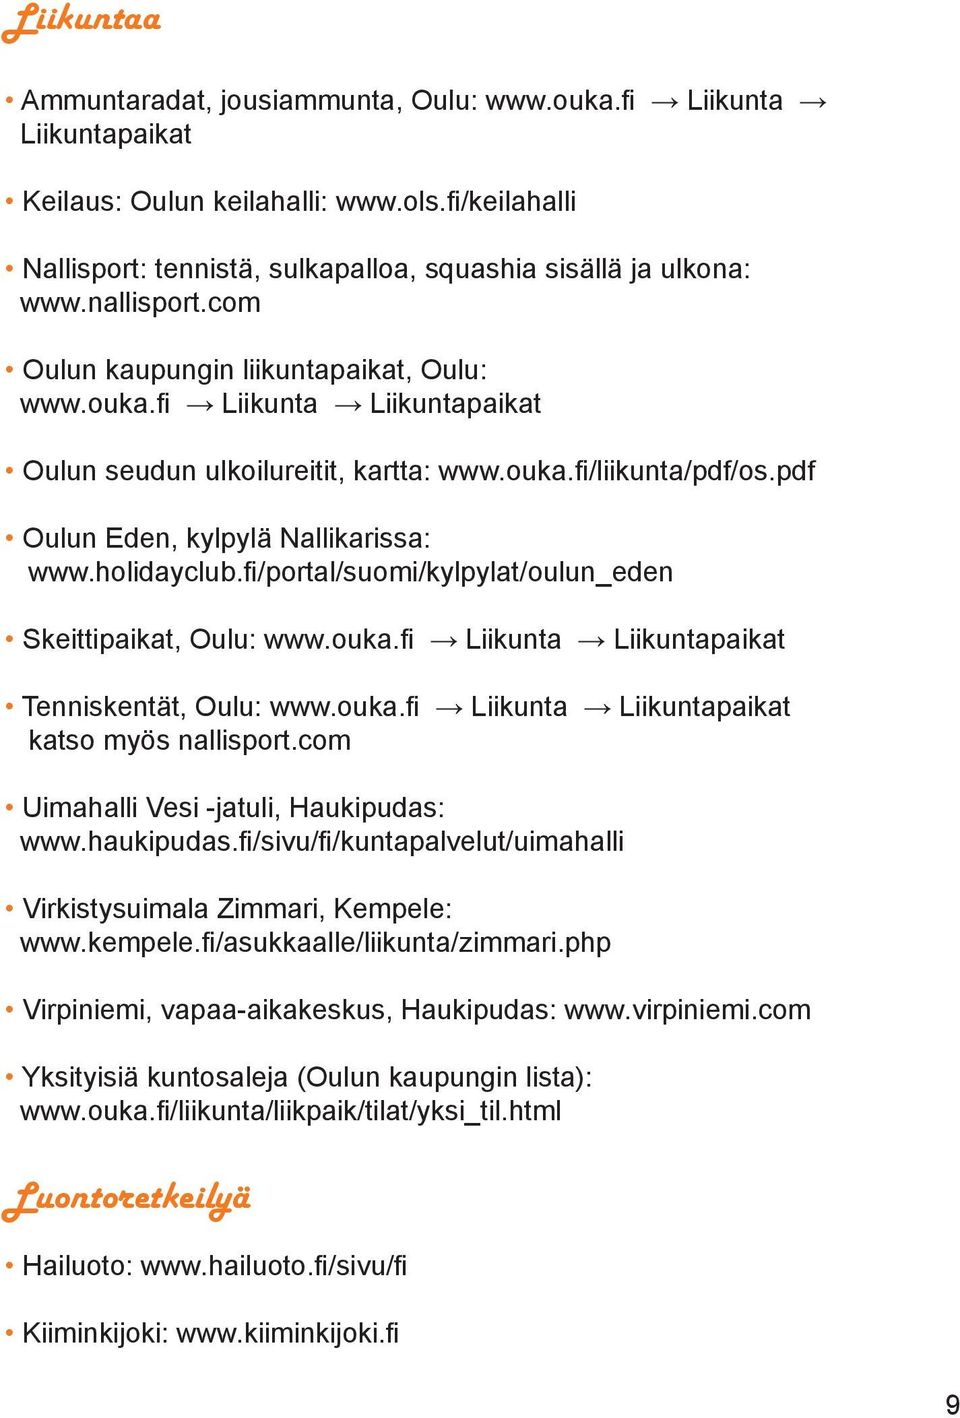 holidayclub.fi/portal/suomi/kylpylat/oulun_eden Skeittipaikat, Oulu: www.ouka.fi Liikunta Liikuntapaikat Tenniskentät, Oulu: www.ouka.fi Liikunta Liikuntapaikat katso myös nallisport.